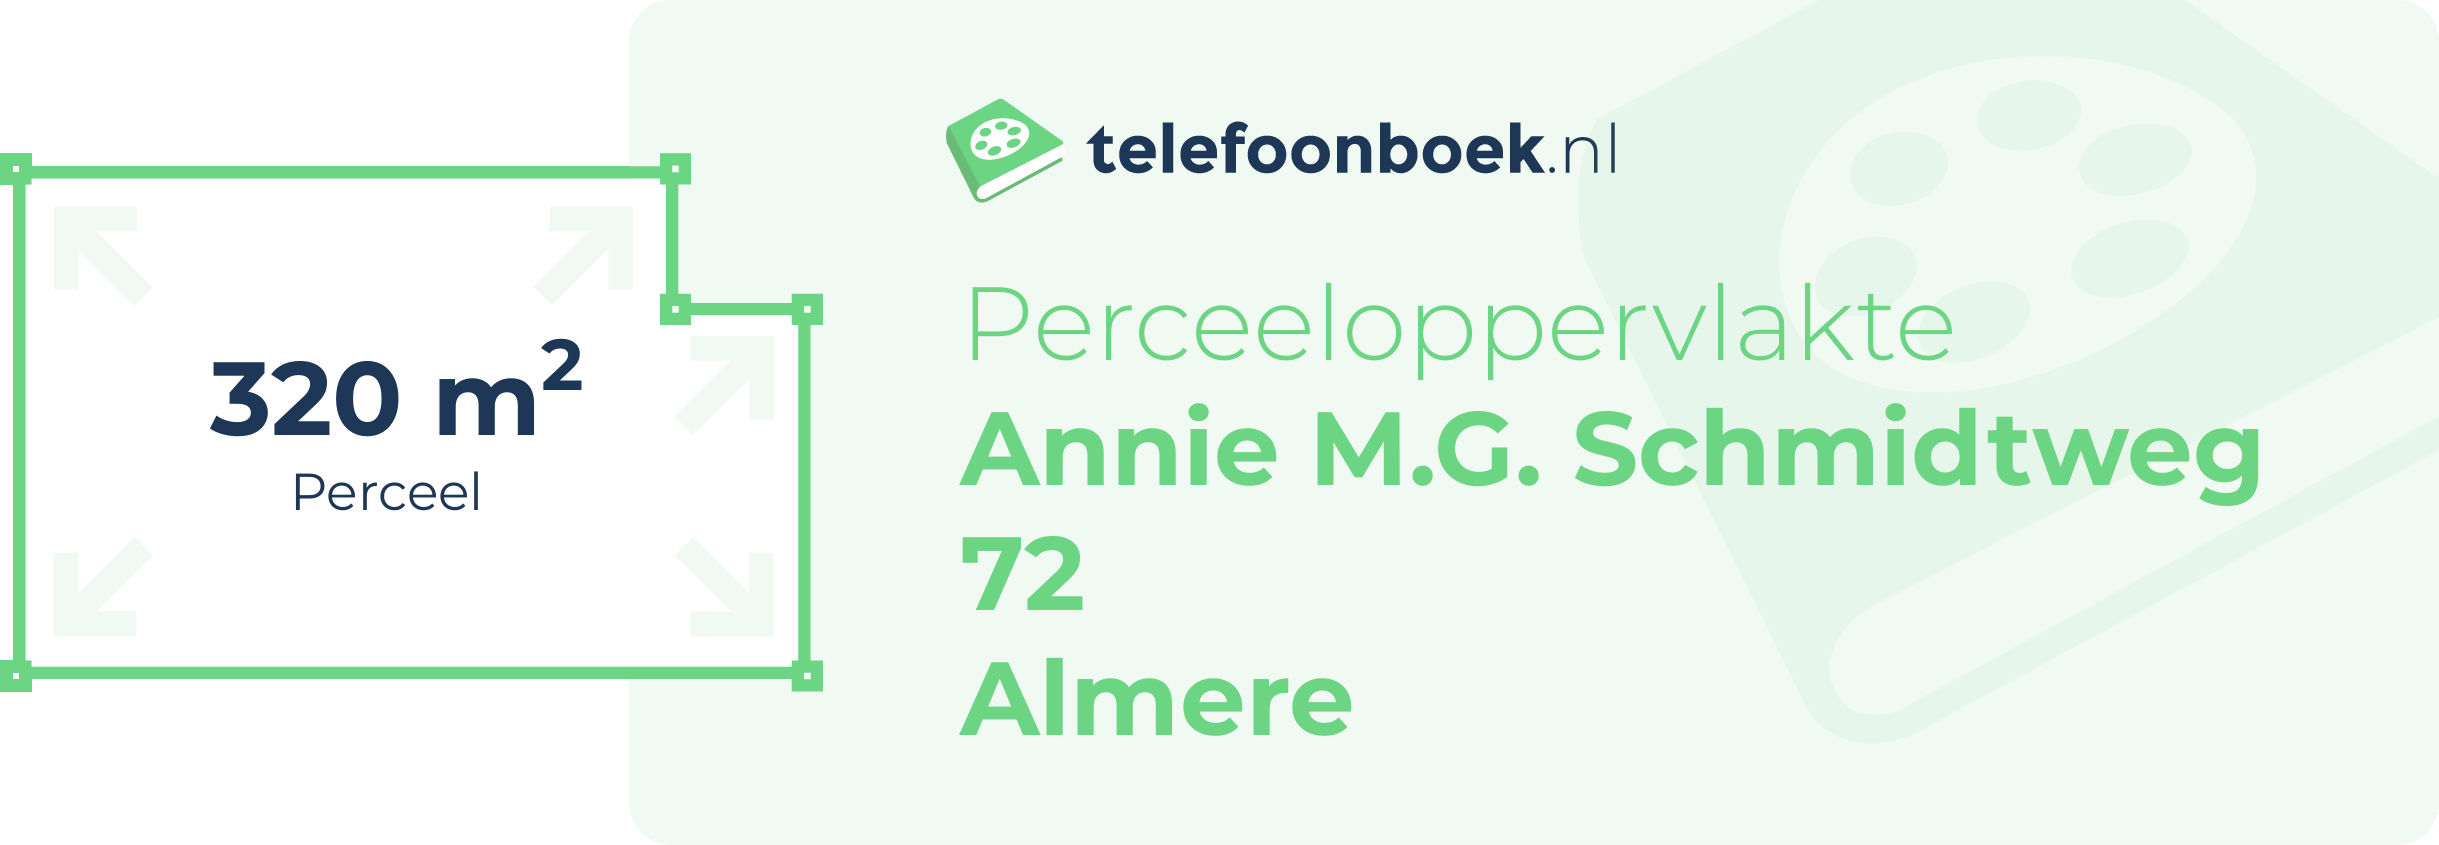 Perceeloppervlakte Annie M.G. Schmidtweg 72 Almere